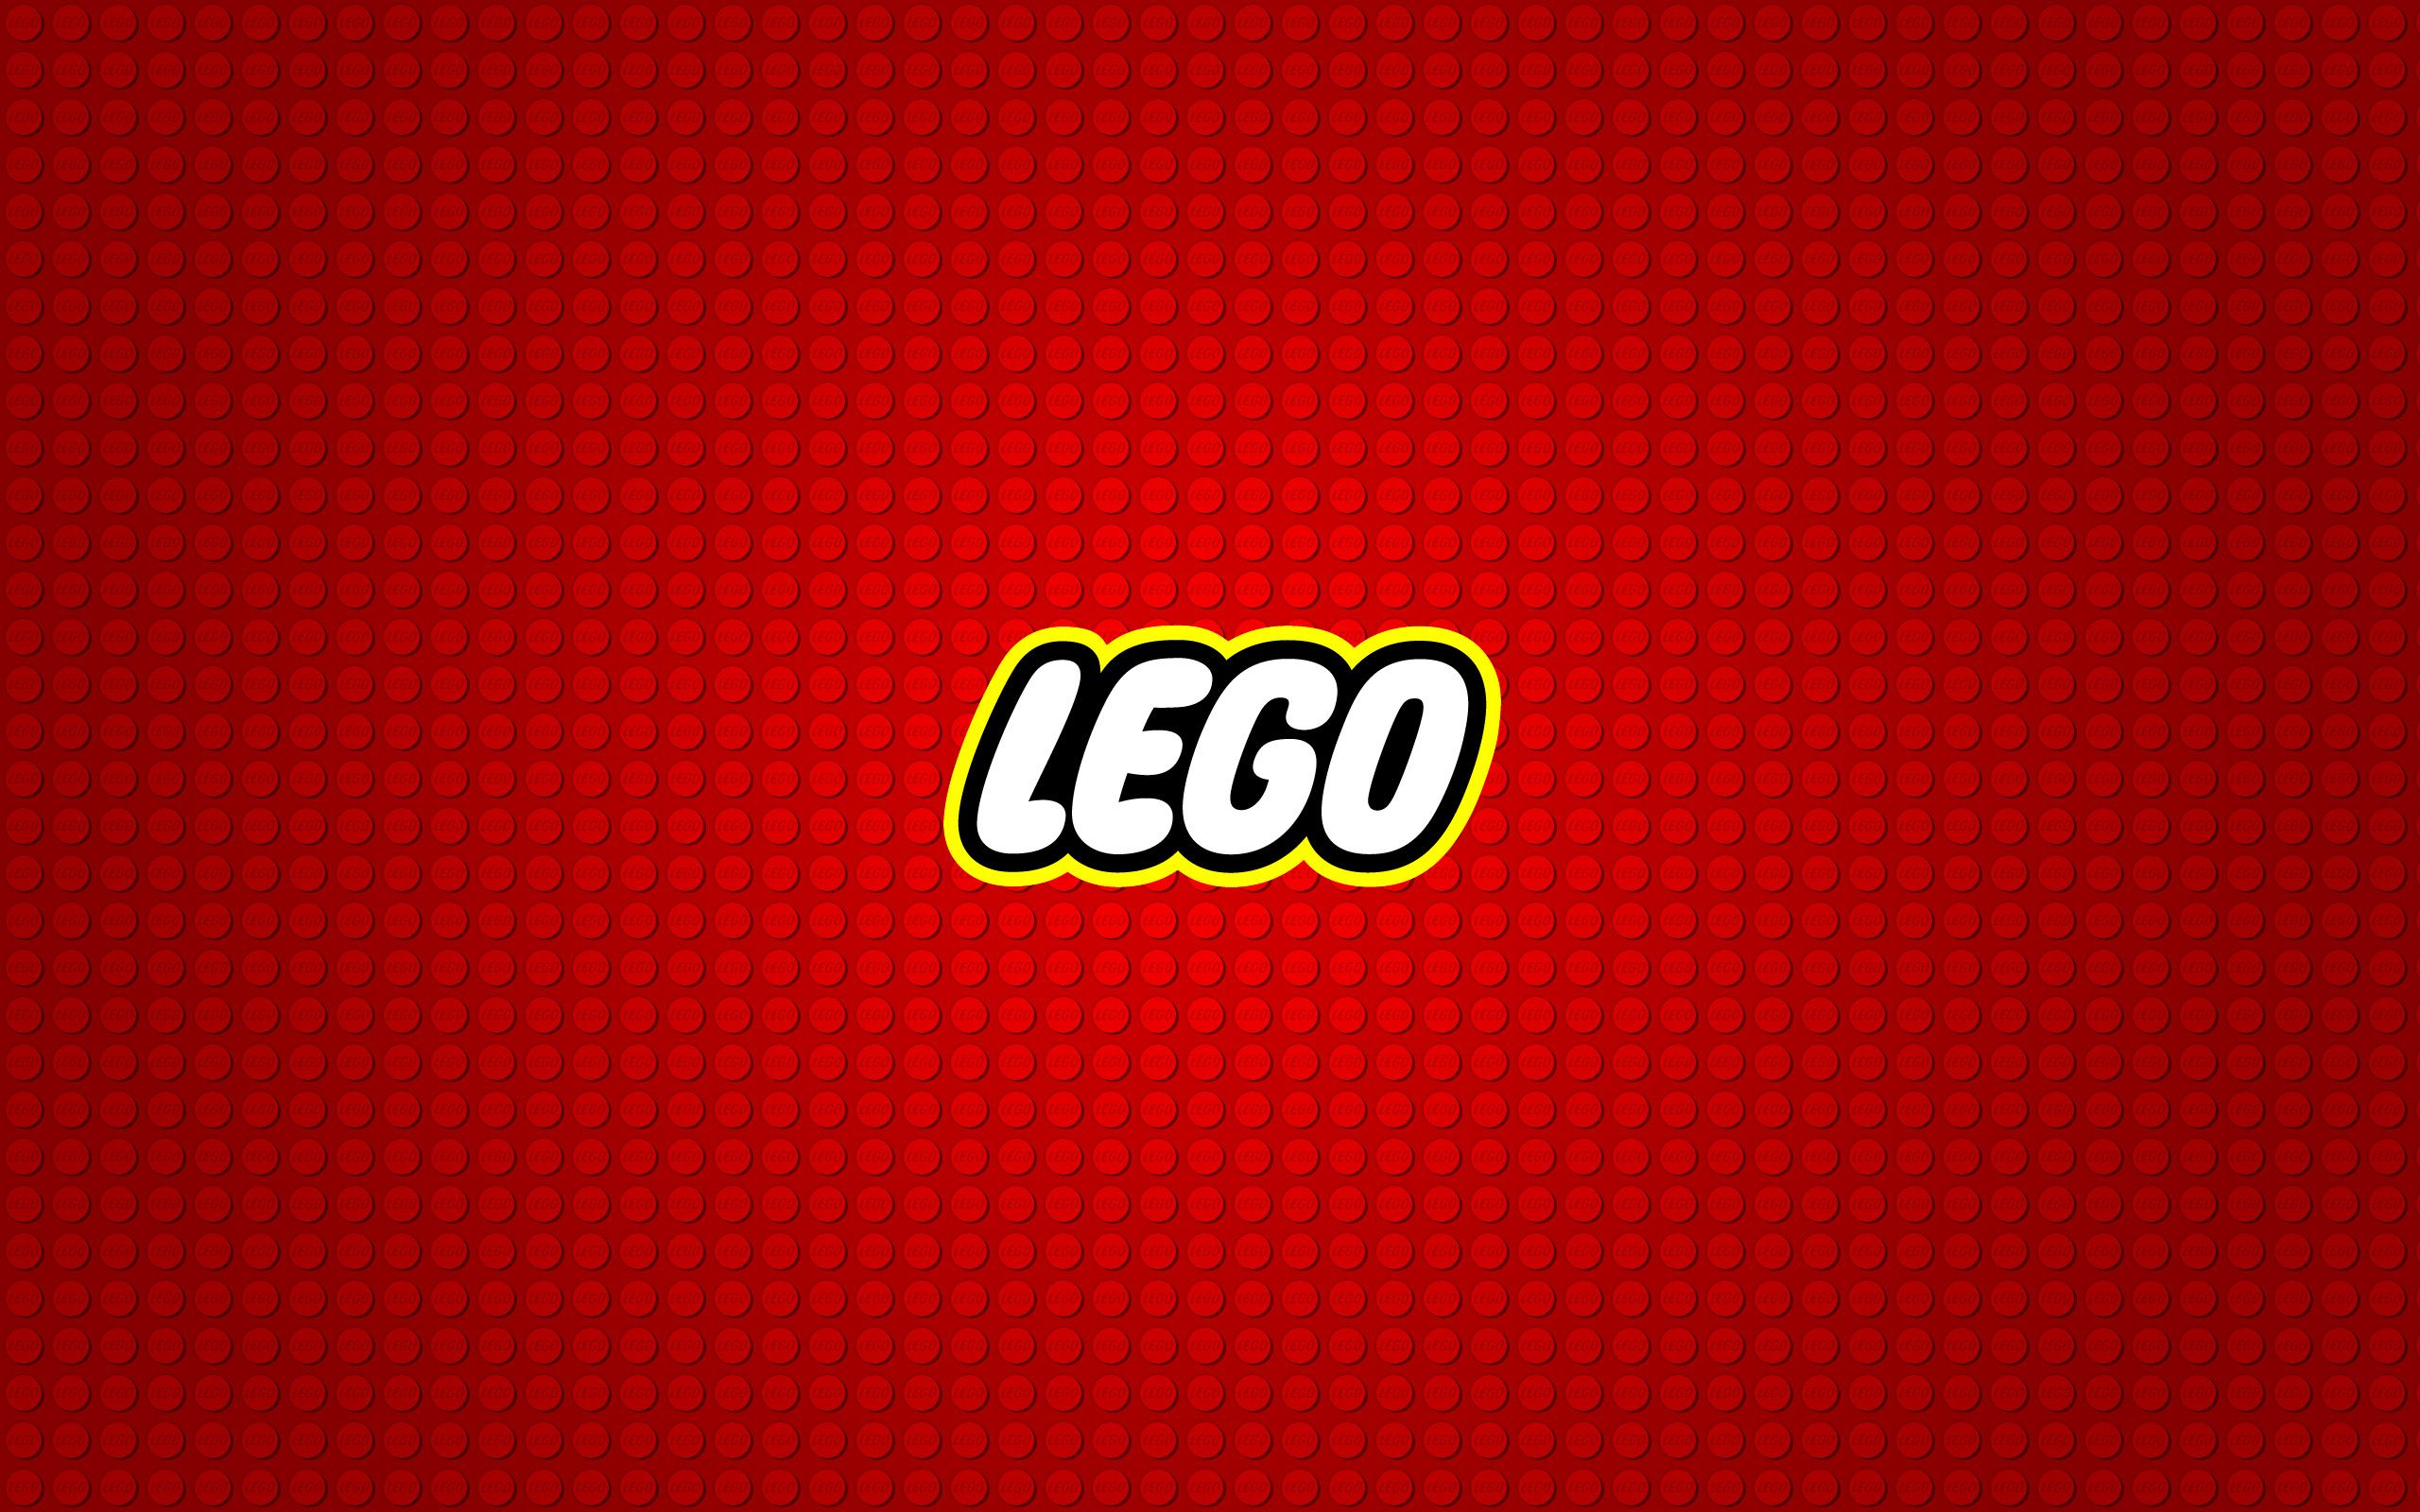 Lego Computer Wallpapers, Desktop Backgrounds | 2560x1600 | ID:265993